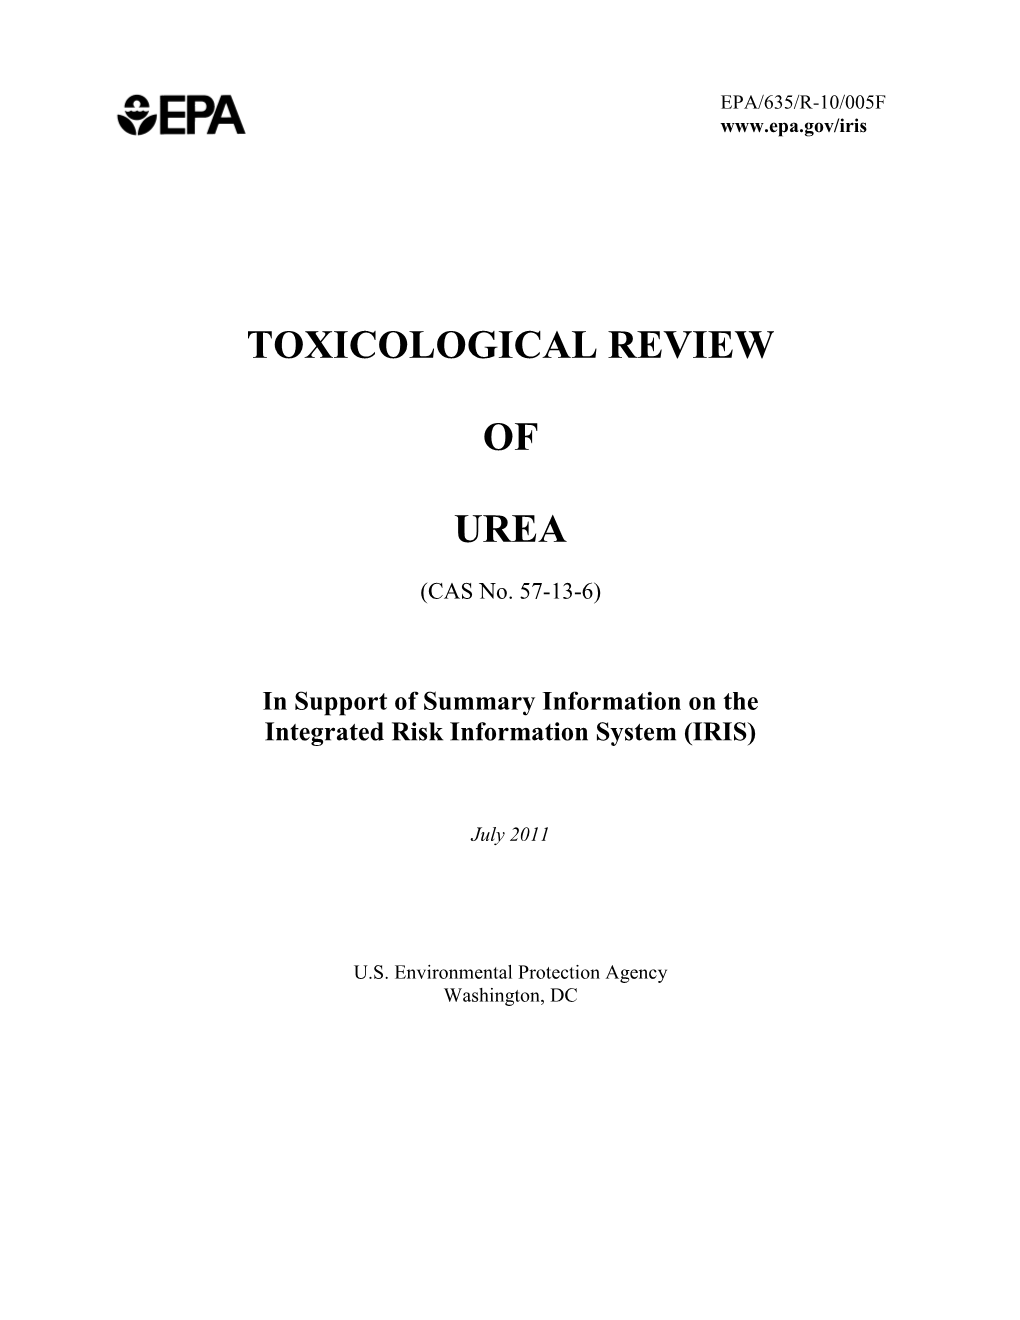 TOXICOLOGICAL REVIEW of UREA (CAS No